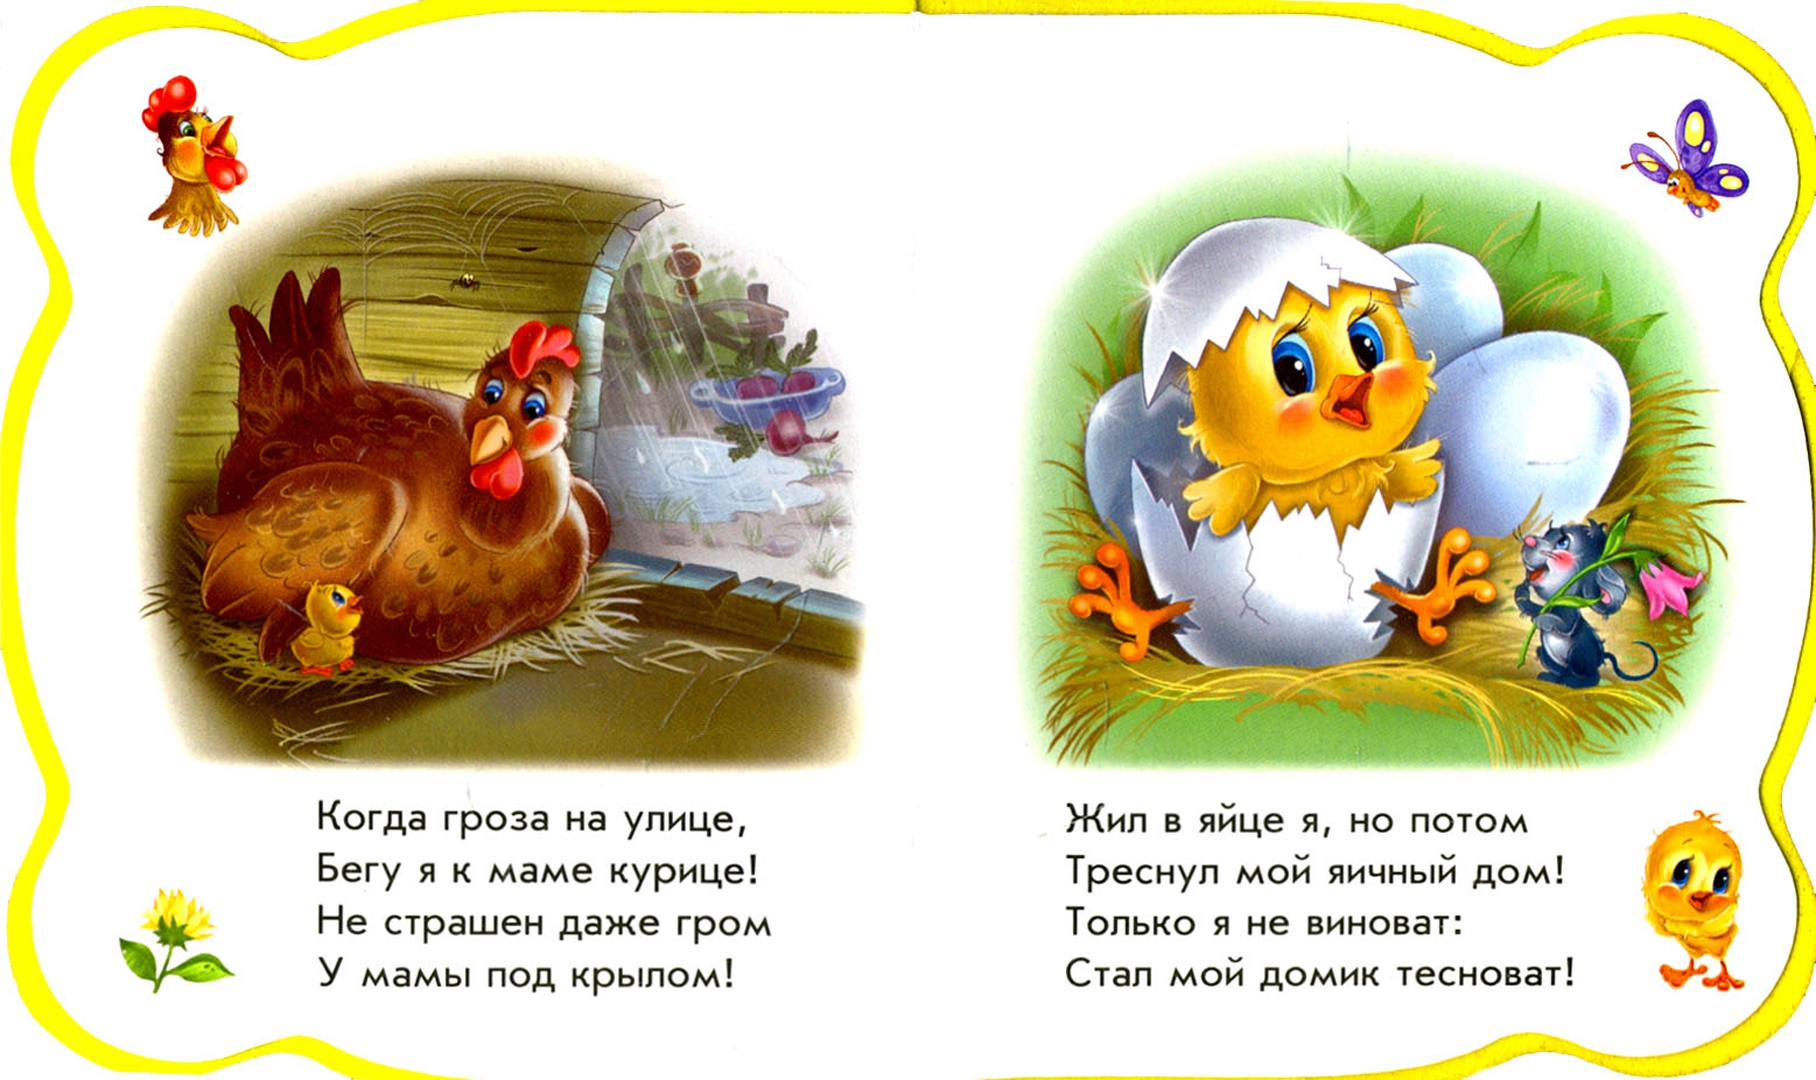 Стих про цыпленка. Стих про цыпленка для детей. Загадка про цыпленка. Загадка про цыпленка для детей. Детские стихи про цыплят.